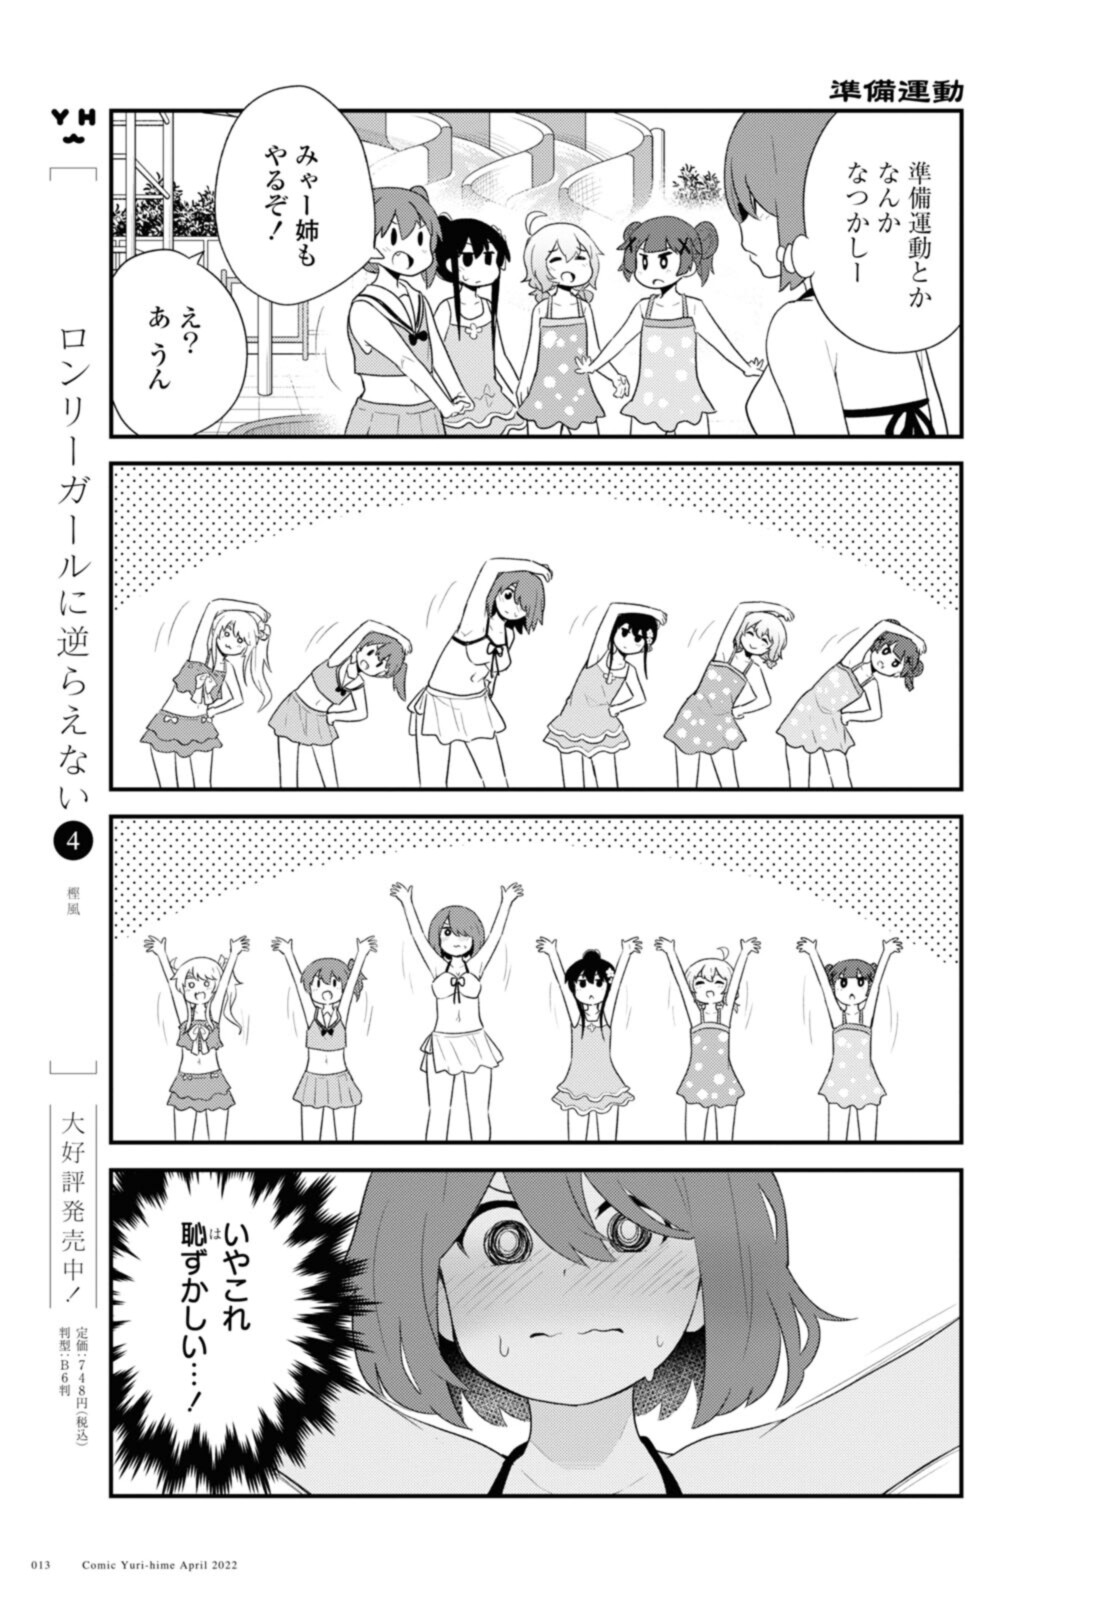 Watashi ni Tenshi ga Maiorita! - Chapter 94.1 - Page 9